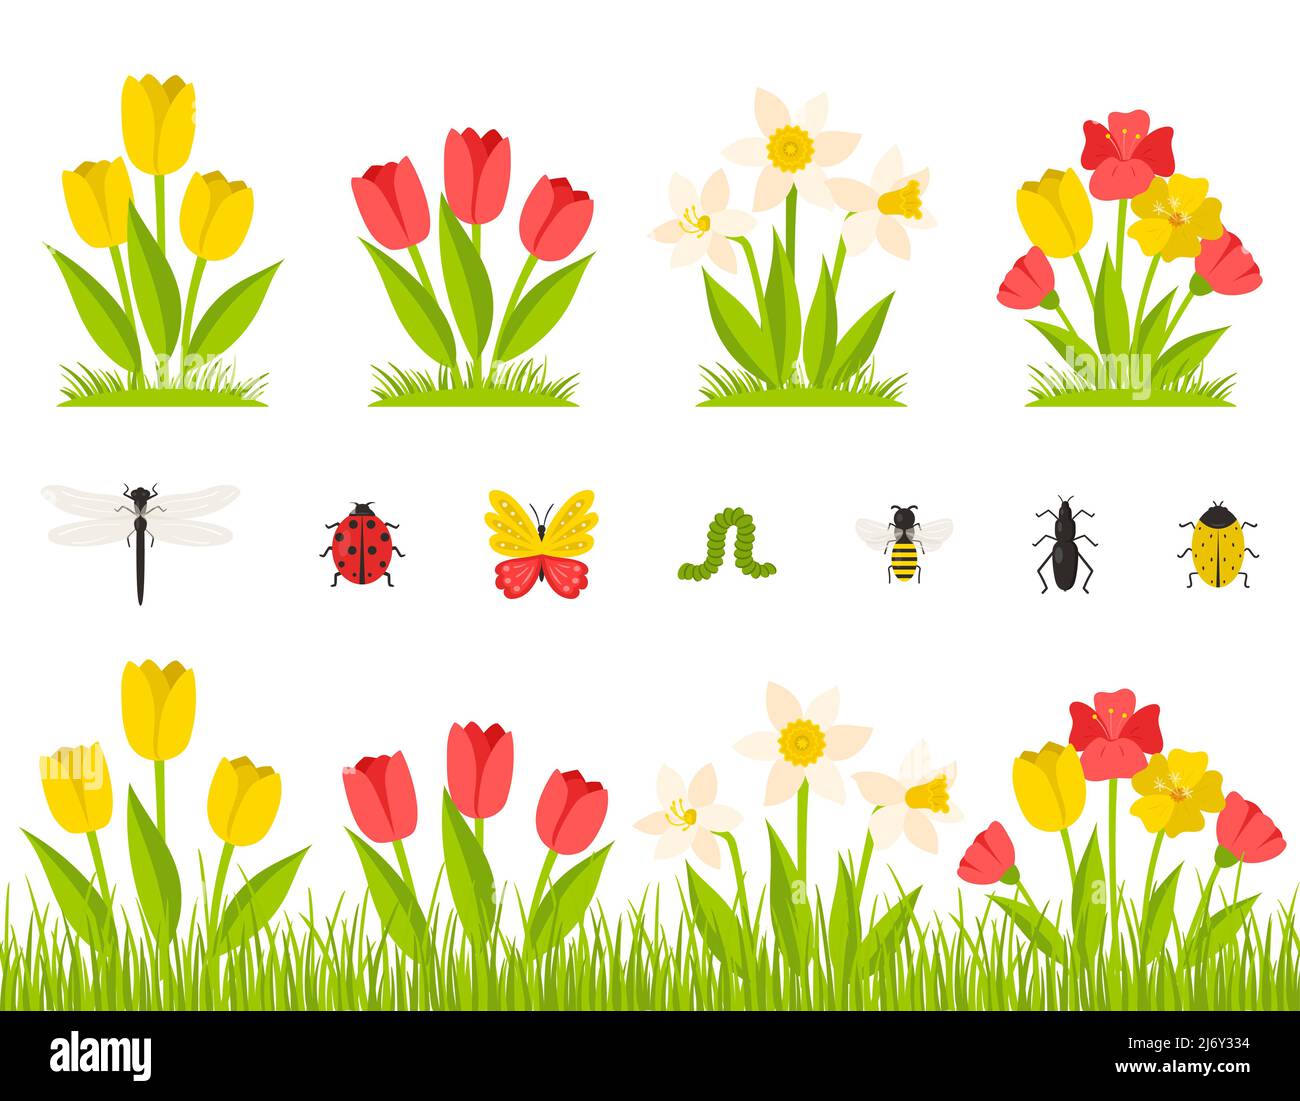 Frühlingsblumen im Garten. Ein Busch aus Tulpen, Narzissen, Mohnblumen. Blumen im Gras, Wiese. Sammlung von Insekten. Botanische Designelemente in einem carto Stock Vektor